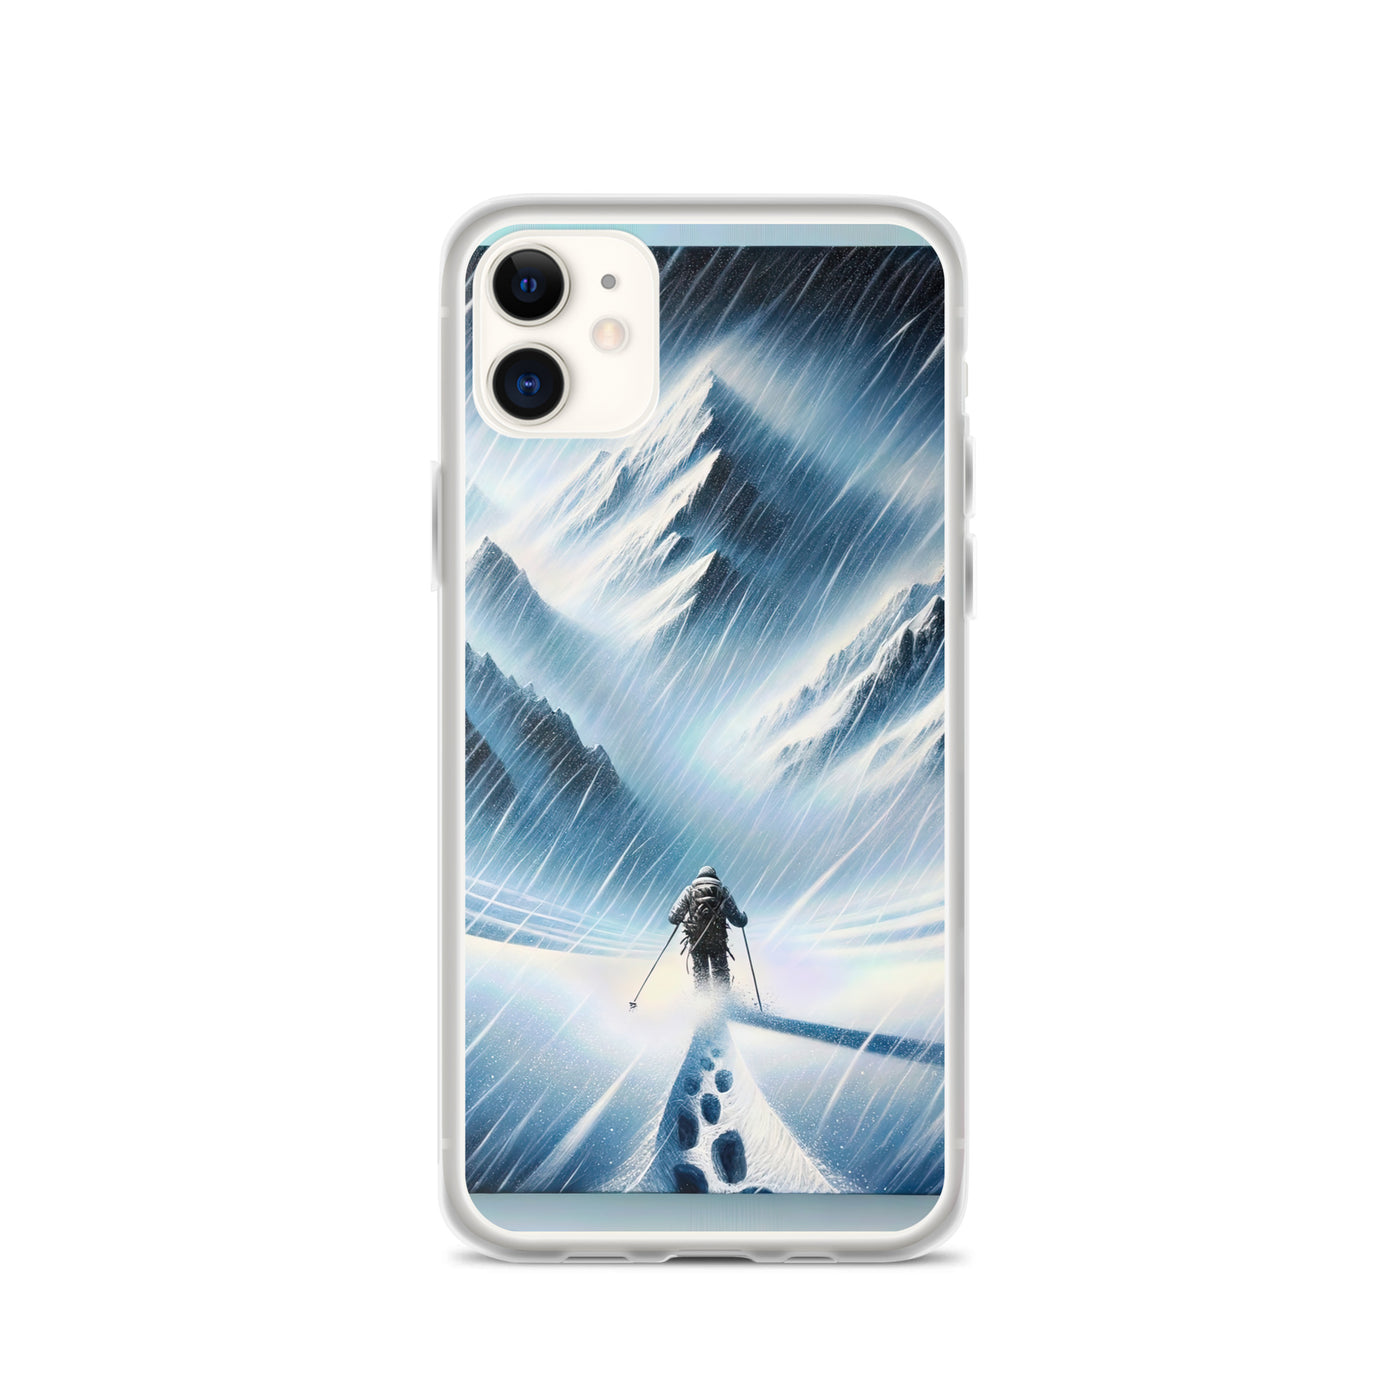 Wanderer und Bergsteiger im Schneesturm: Acrylgemälde der Alpen - iPhone Schutzhülle (durchsichtig) wandern xxx yyy zzz iPhone 11